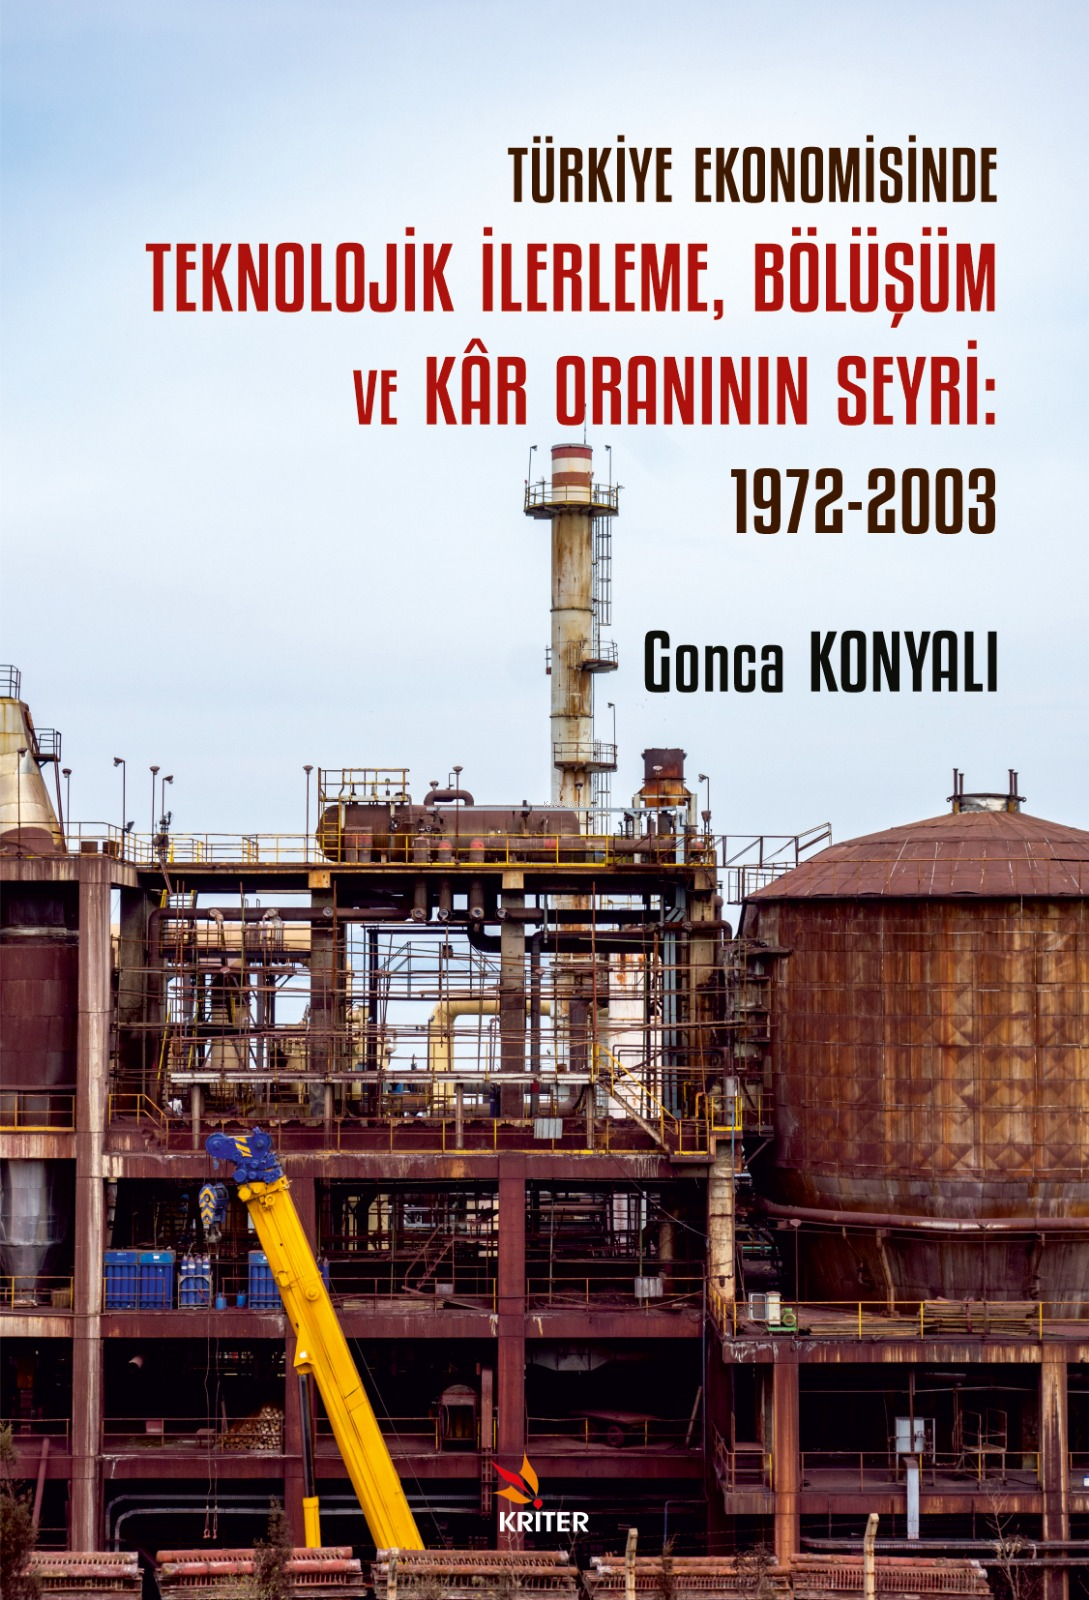 Türkiye Ekonomisinde Teknolojik İlerleme, Bölüşüm ve Kâr Oraninin Seyri: 1972-2003